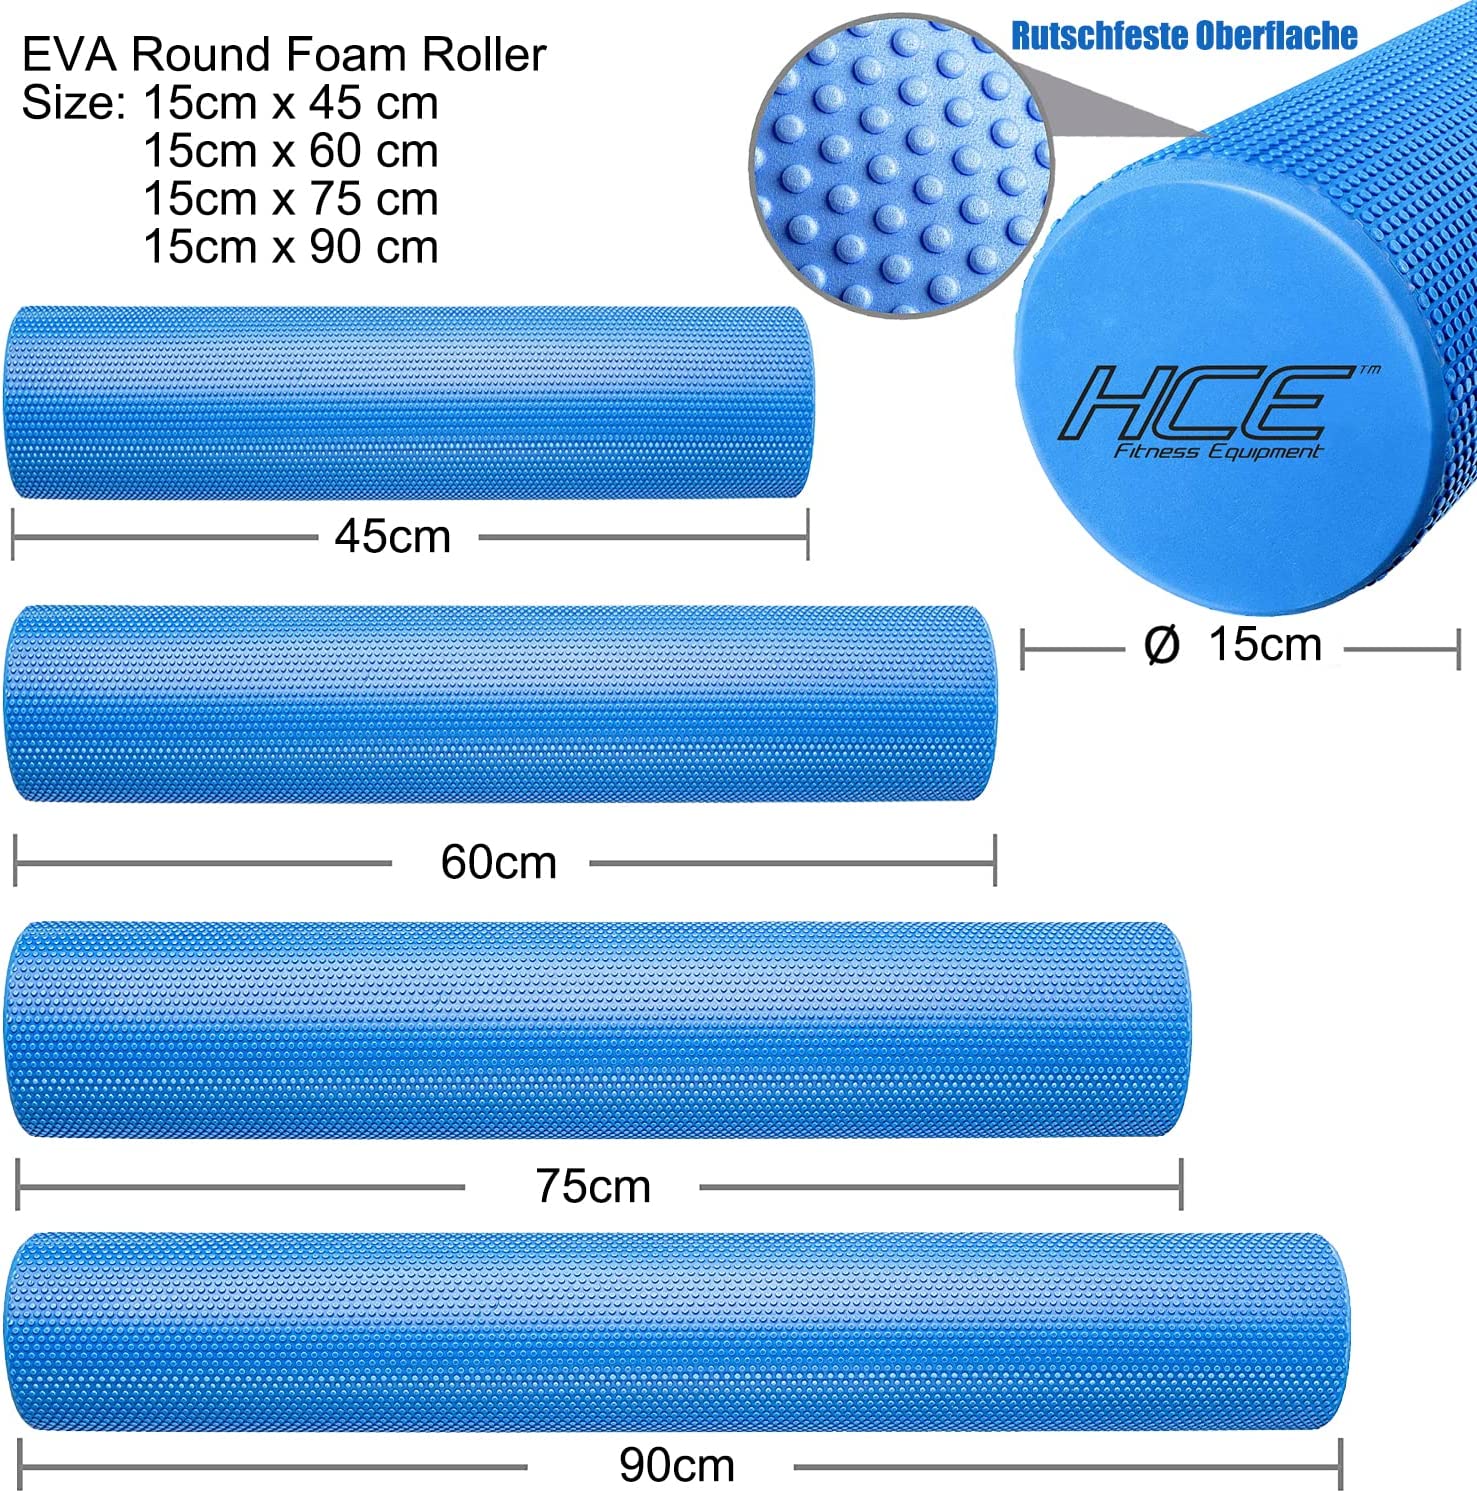 EVA Round Foam Roller 15cm x 75cm